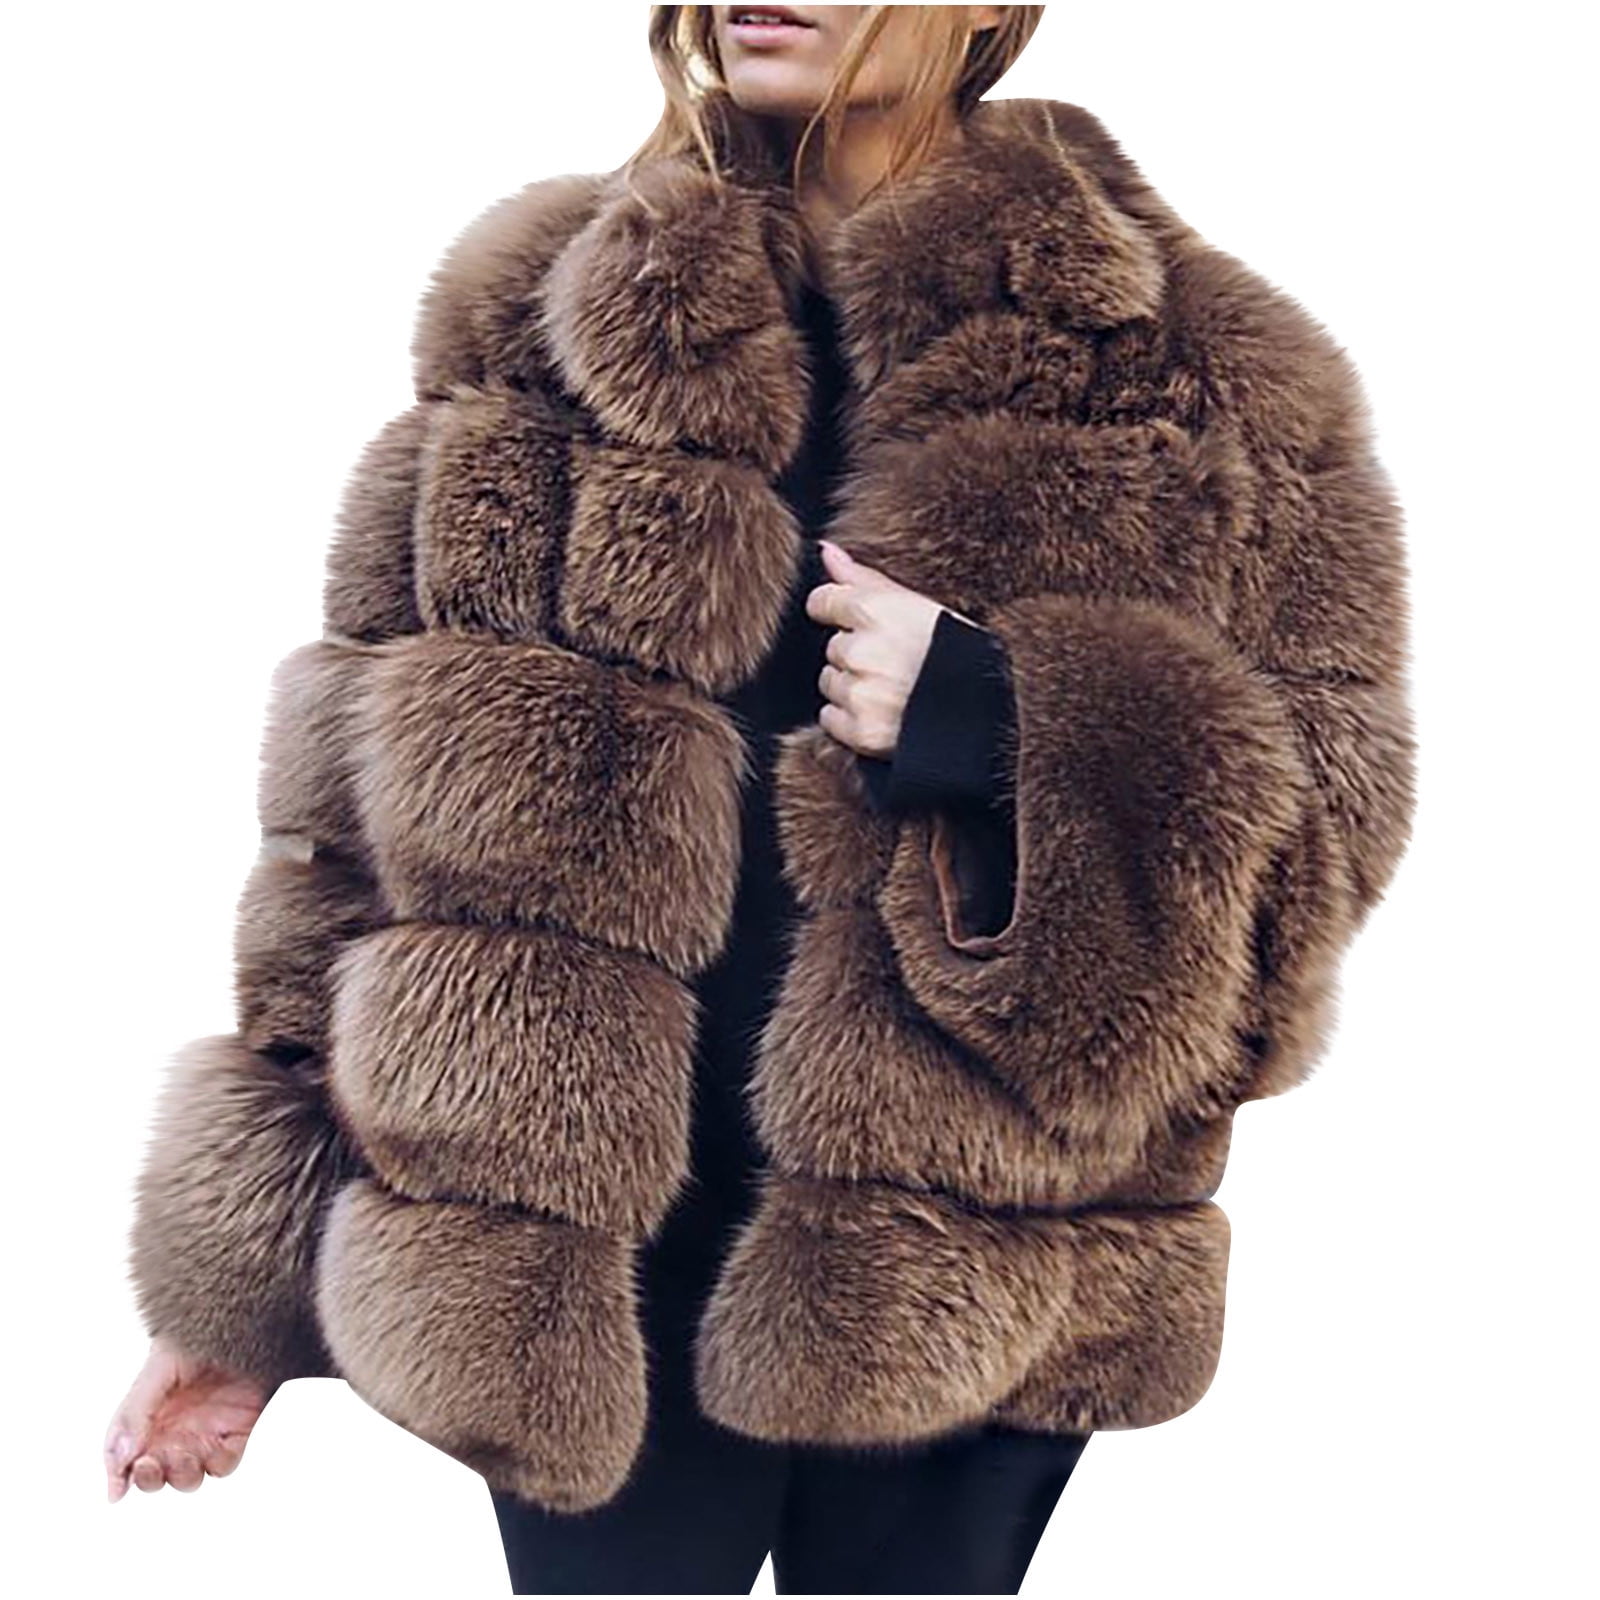 yoeyez Winter Coats for Women Plus Size Fashion Womens Warm Faux Coat  Jacket Winter Zipper Long Sleeve Outerwear Chaqueta Sherpa Mujer Jersey 